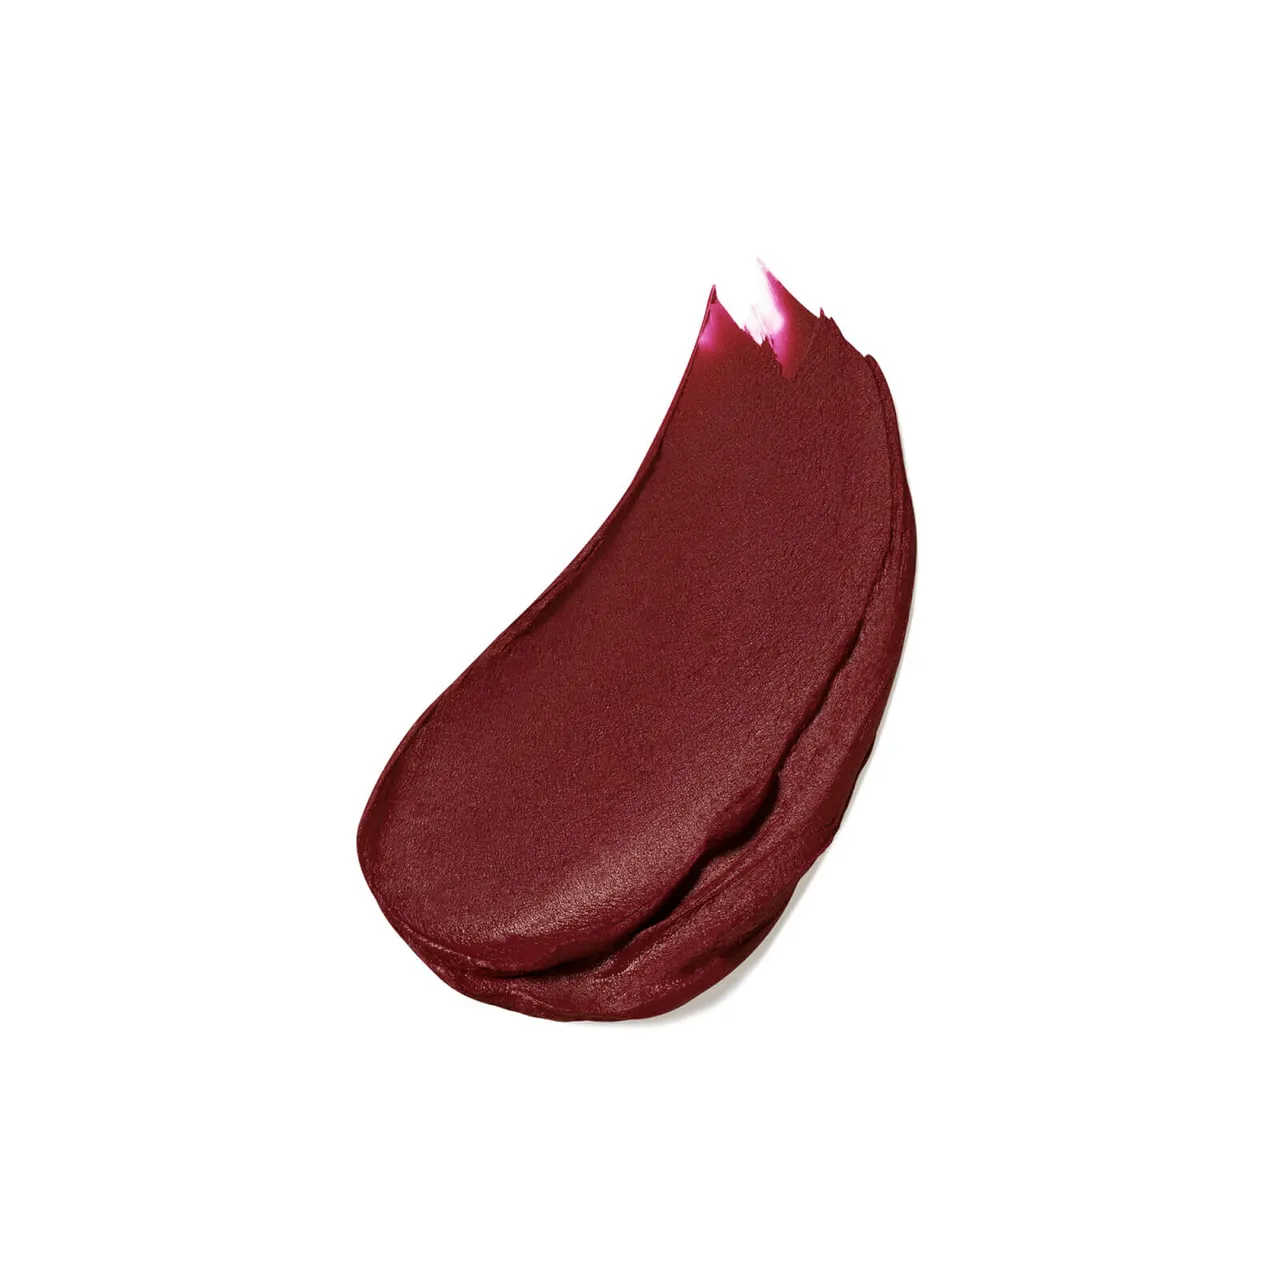 Estée Lauder Pure Colour Matte Lipstick Refill 3.5g (Various Shades) - Power Kiss